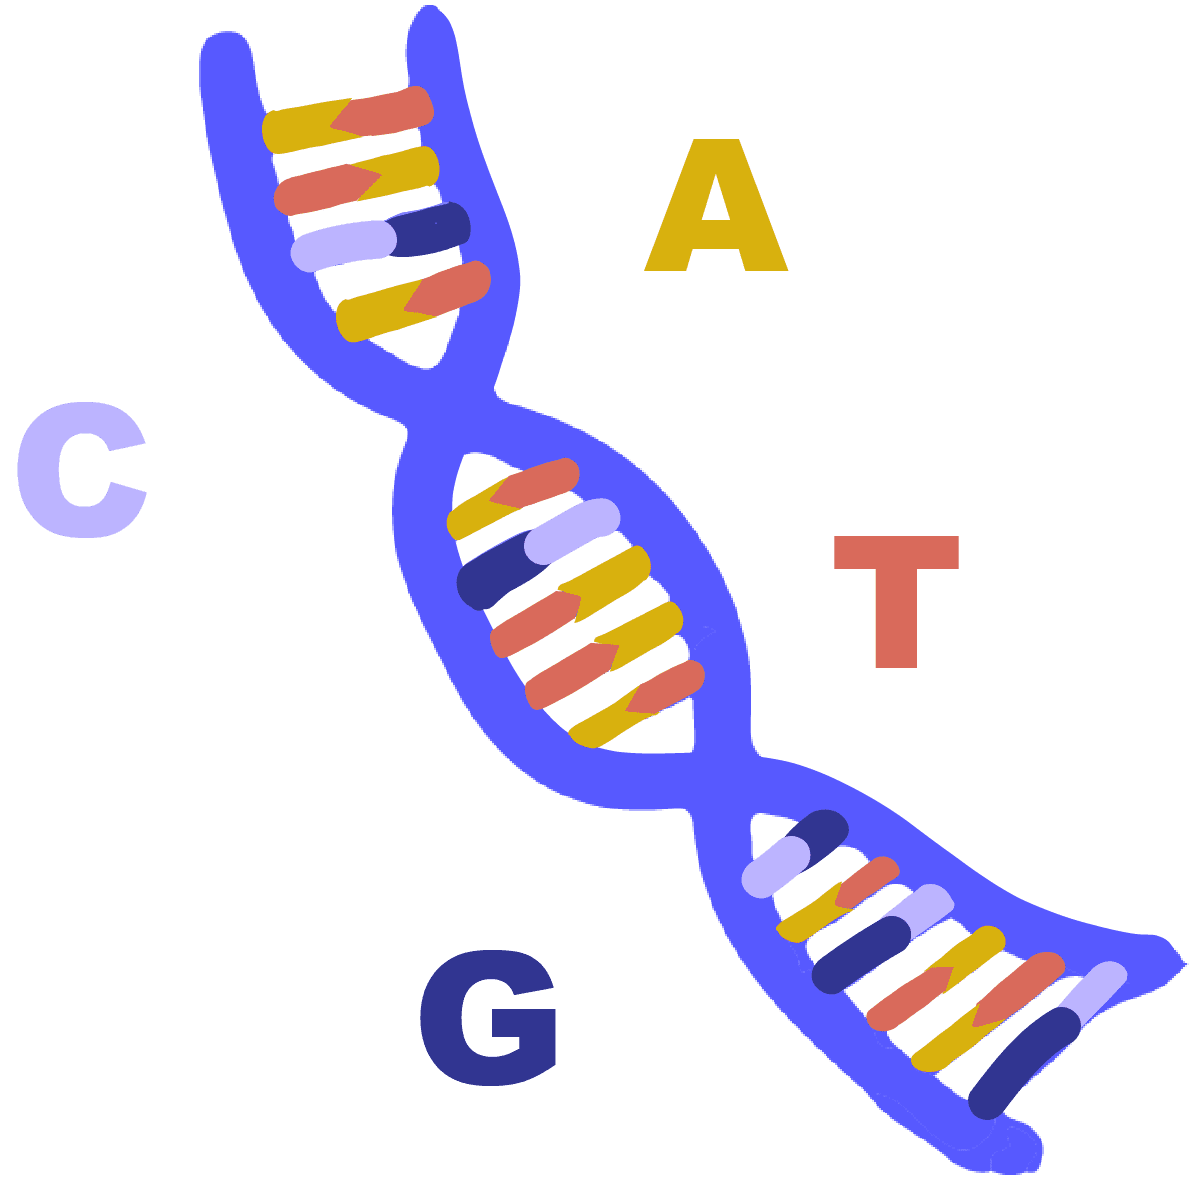 带有碱基对腺嘌呤、胸腺嘧啶、胞嘧啶和鸟嘌呤的蓝色 DNA 螺旋图像